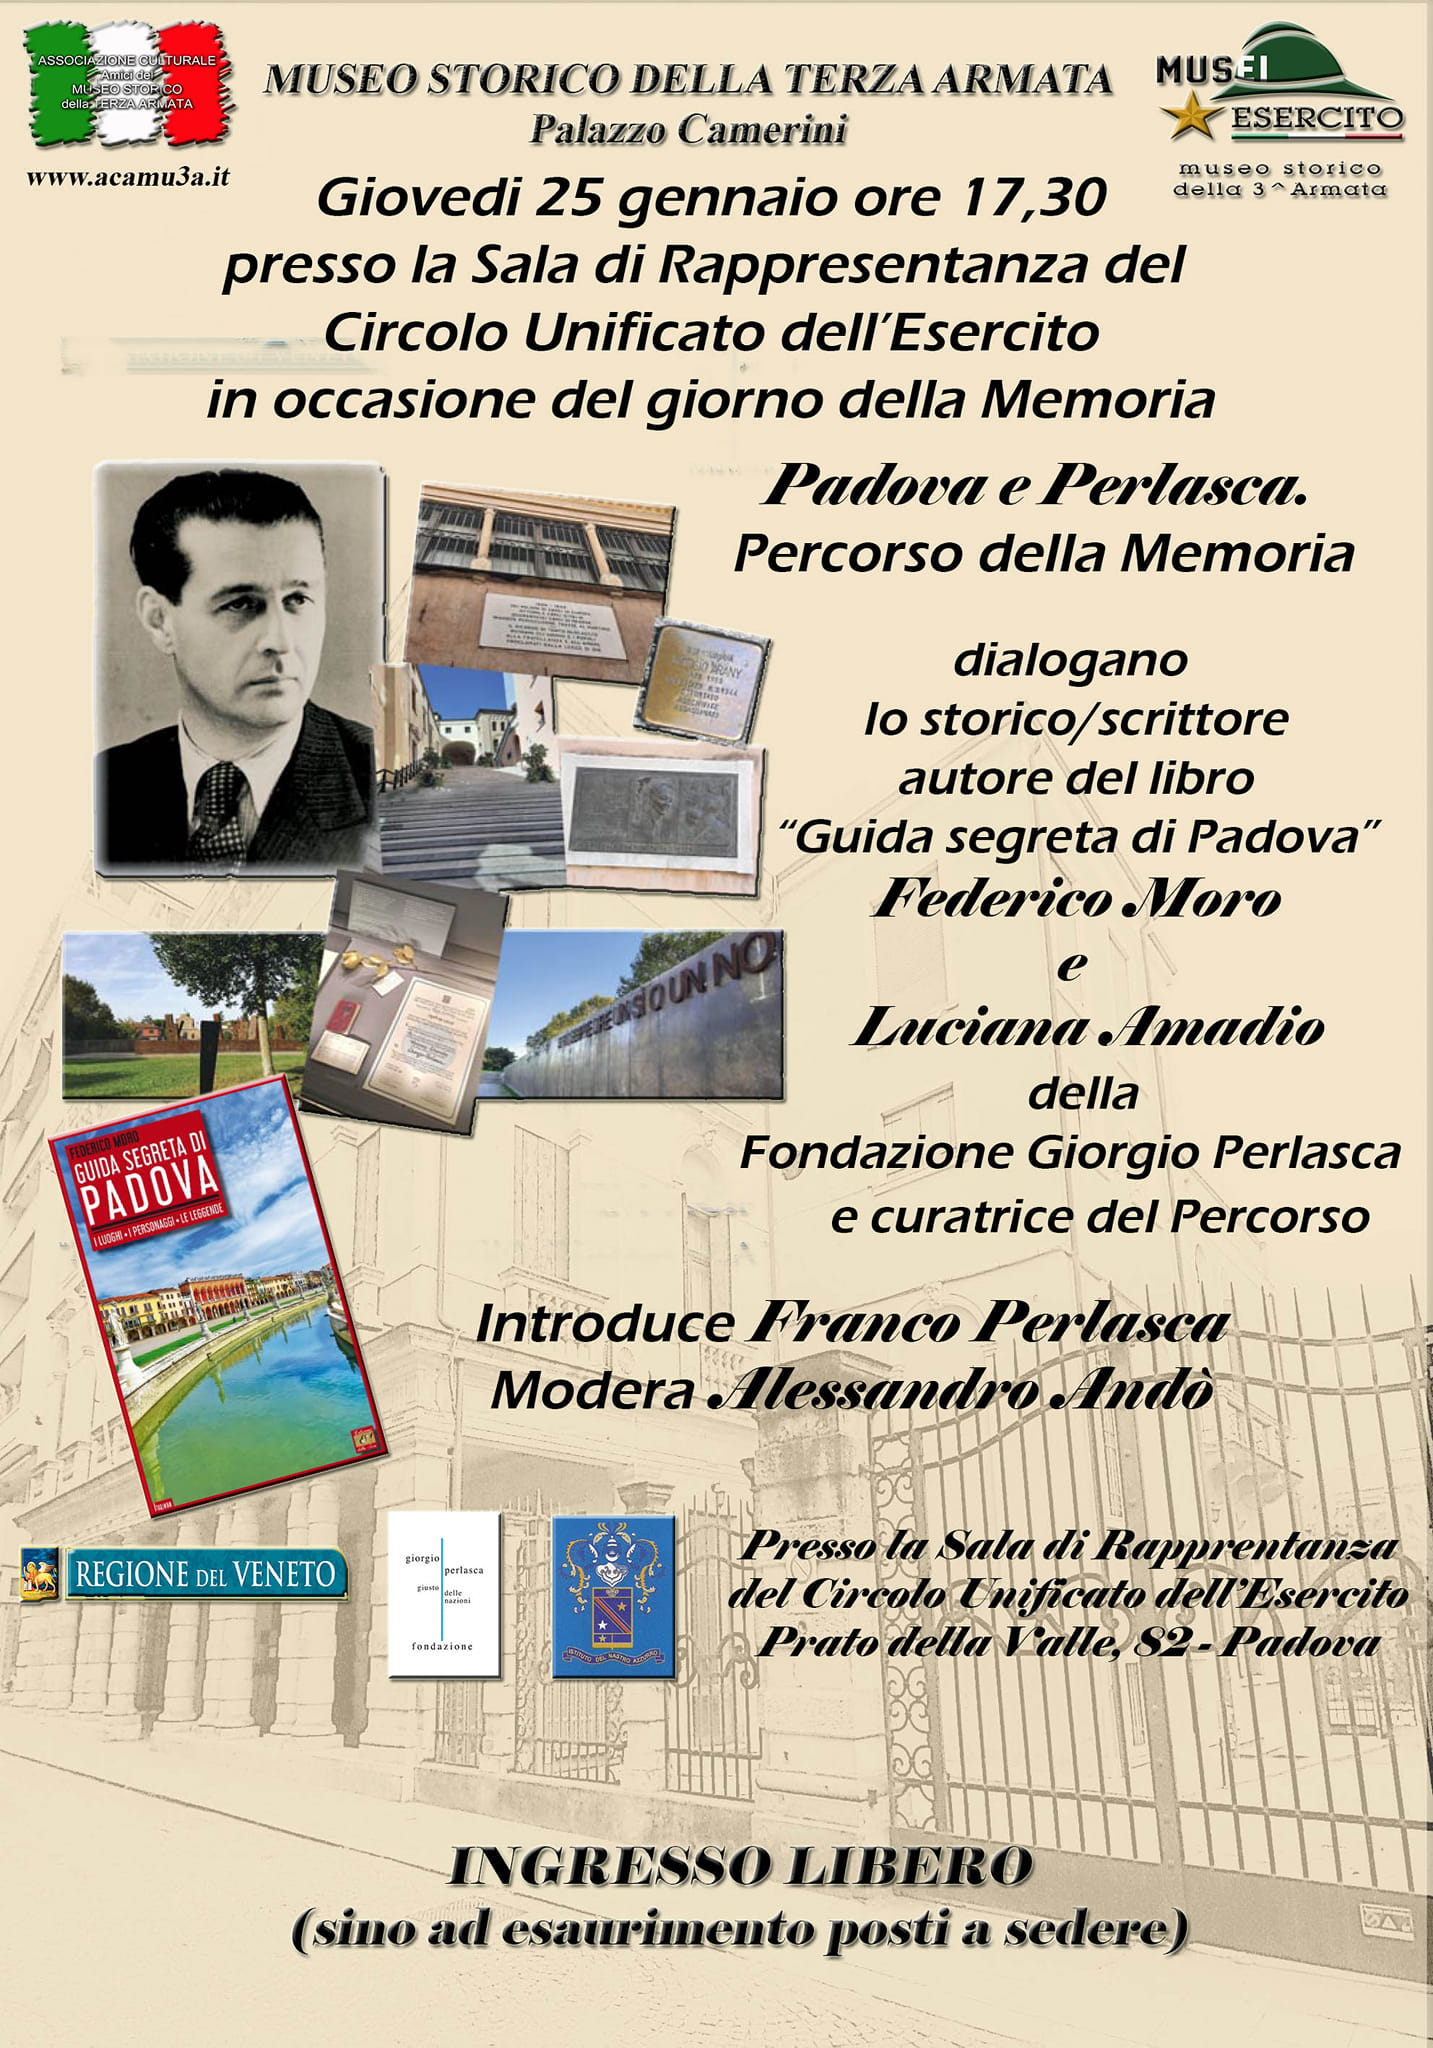 Museo storico della Terza Armata, con il patrocinio della Regione Veneto, la Fondazione Giorgio Perlasca e l’Istituto del Nastro Azzurro